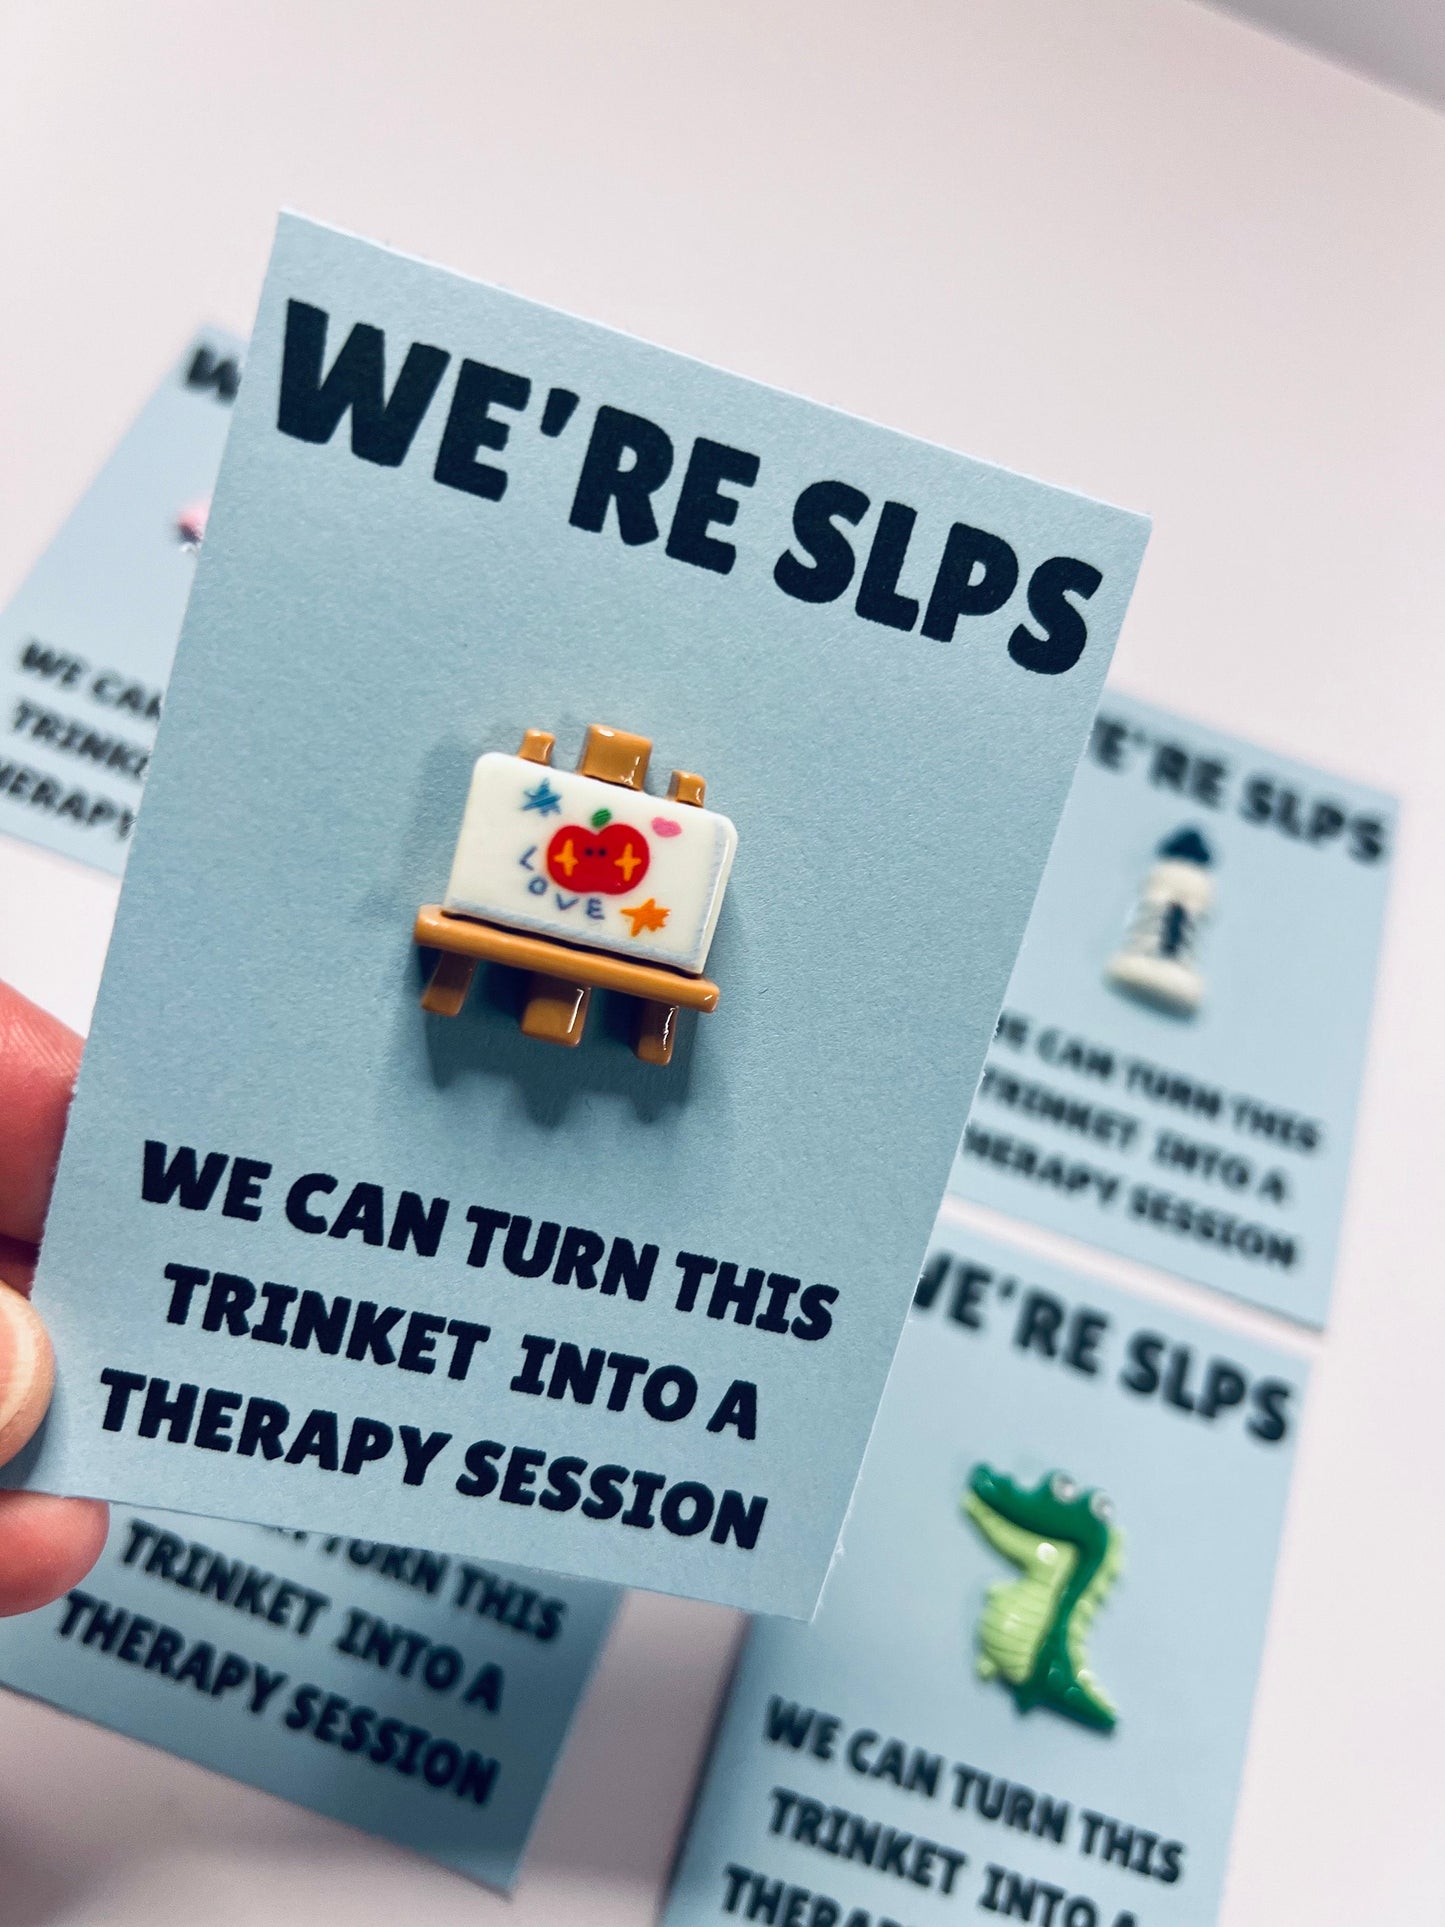 Nous sommes SLPs Pocket Hug Card Envoyer à SLP Mini Objets pour une carte-cadeau d'orthophonie